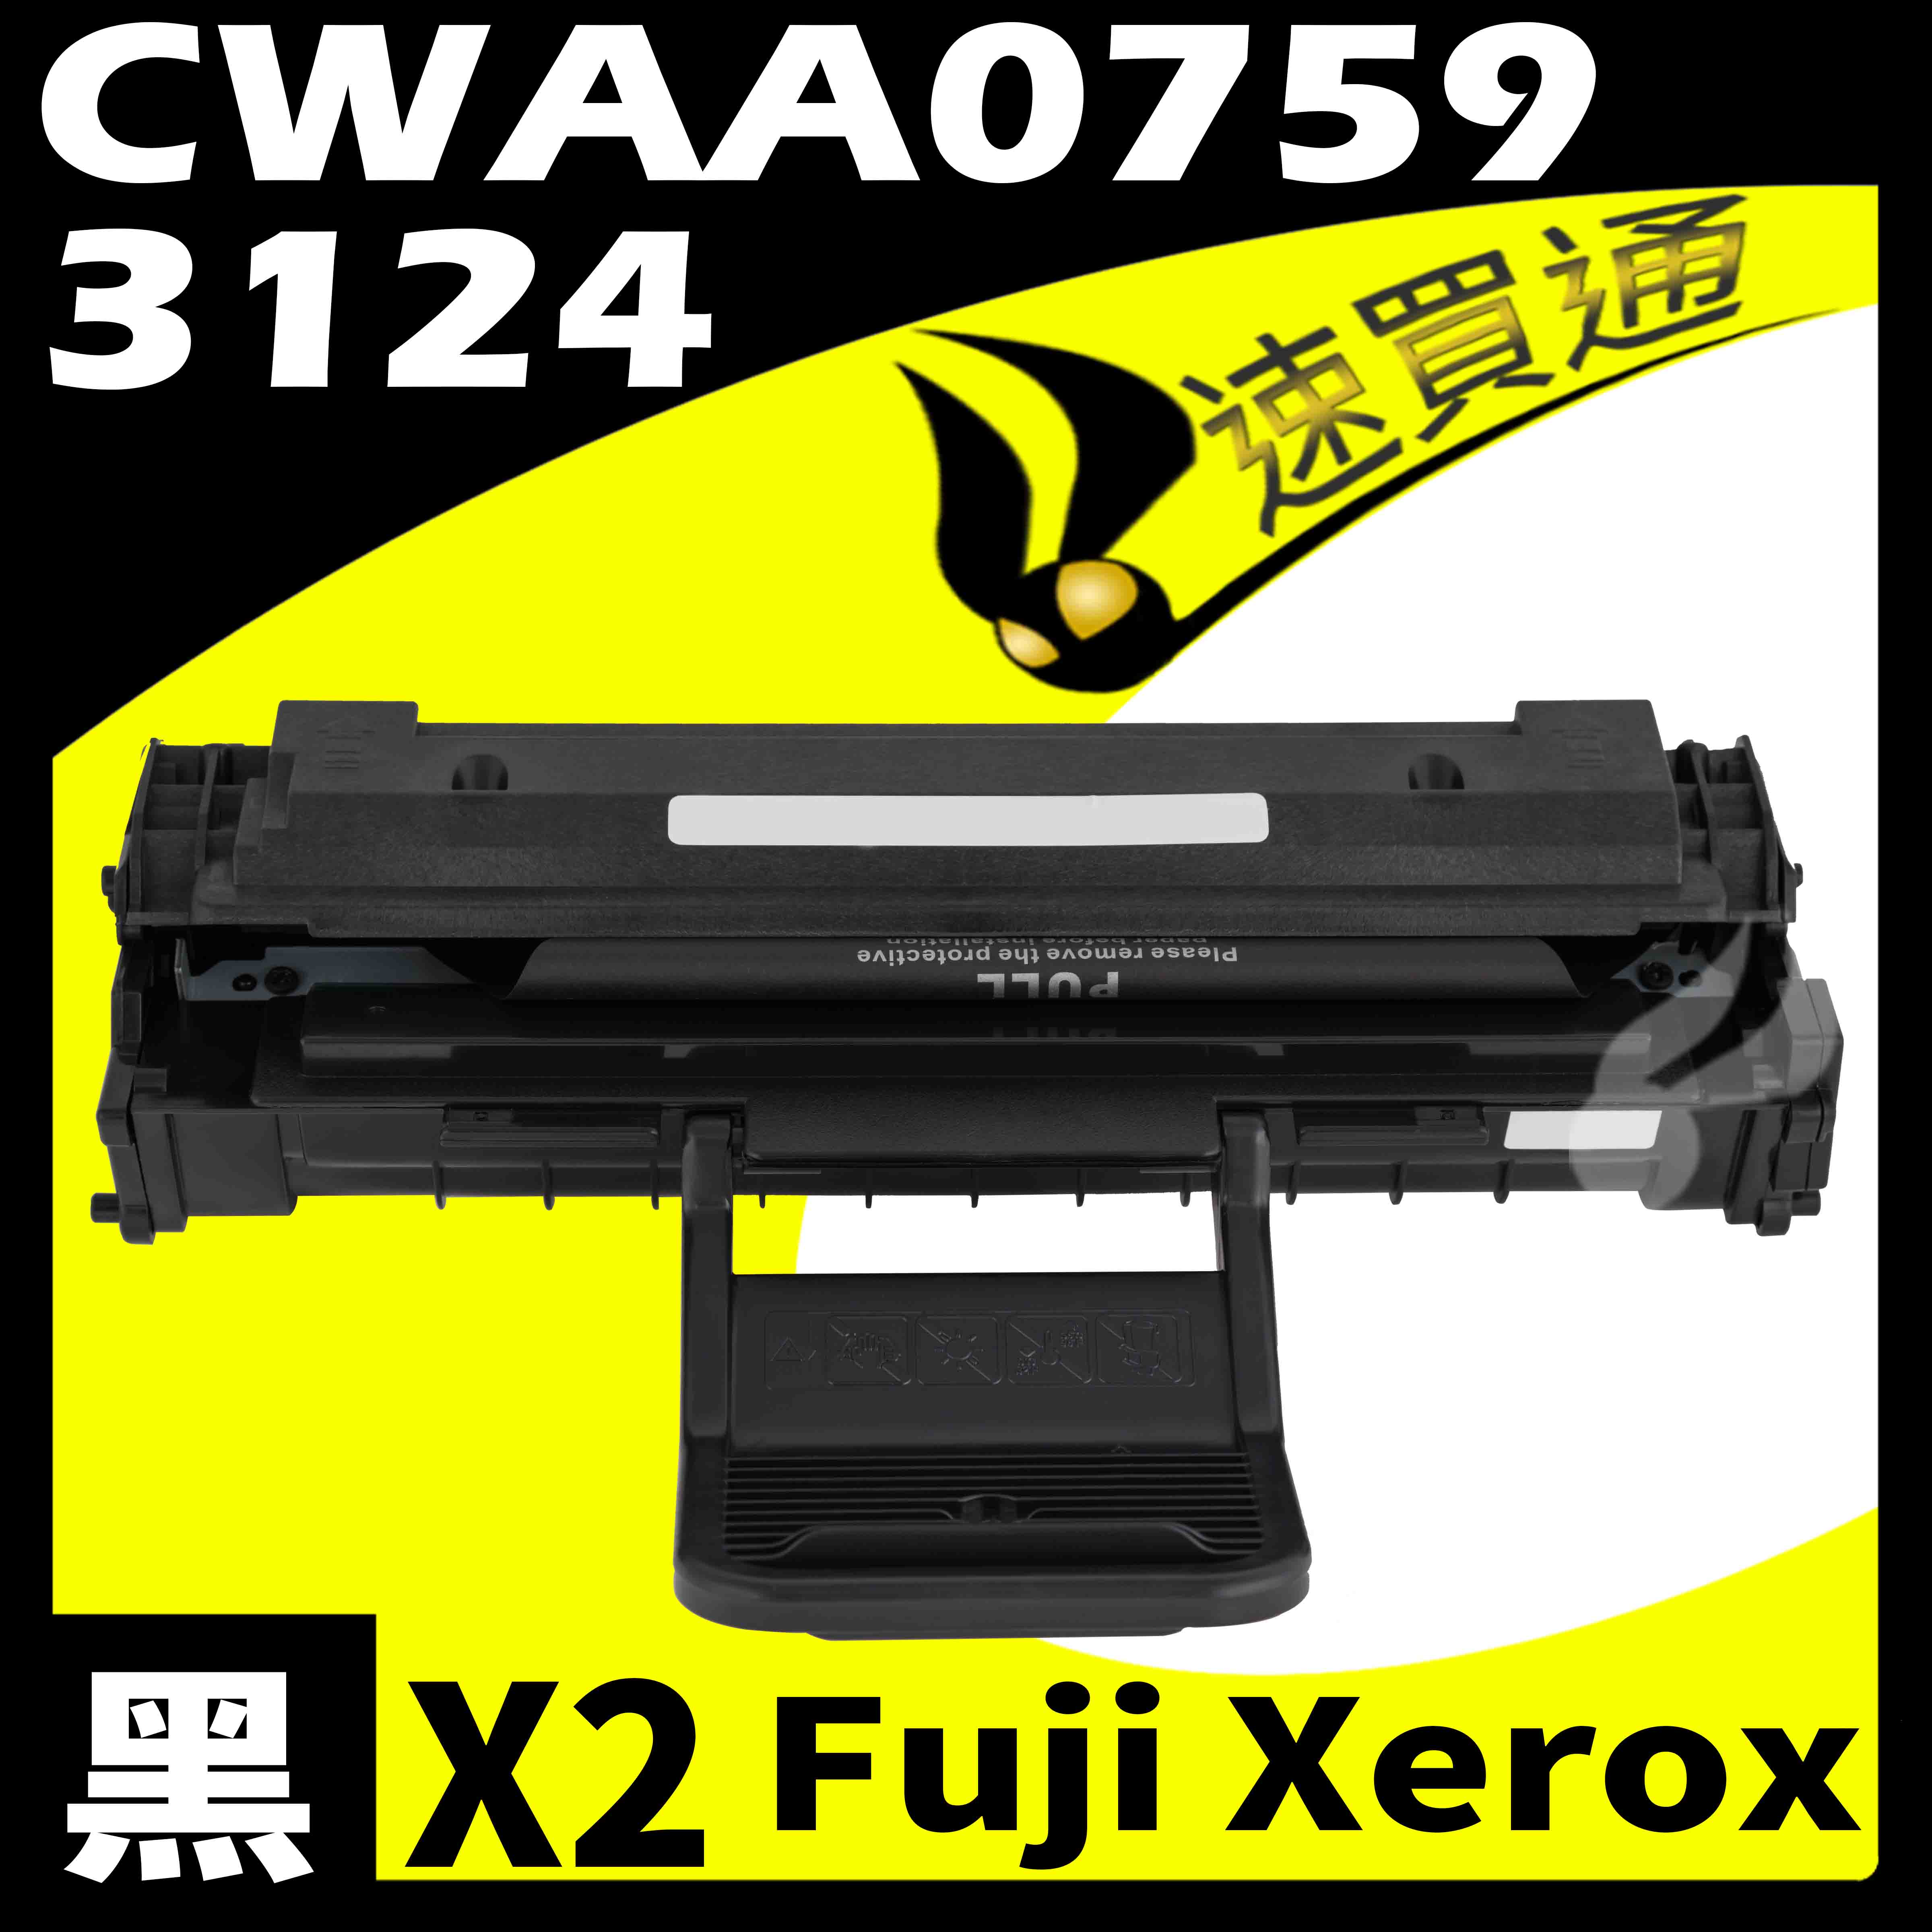 【速買通】超值2件組 Fuji Xerox 3124/CWAA0759 相容碳粉匣